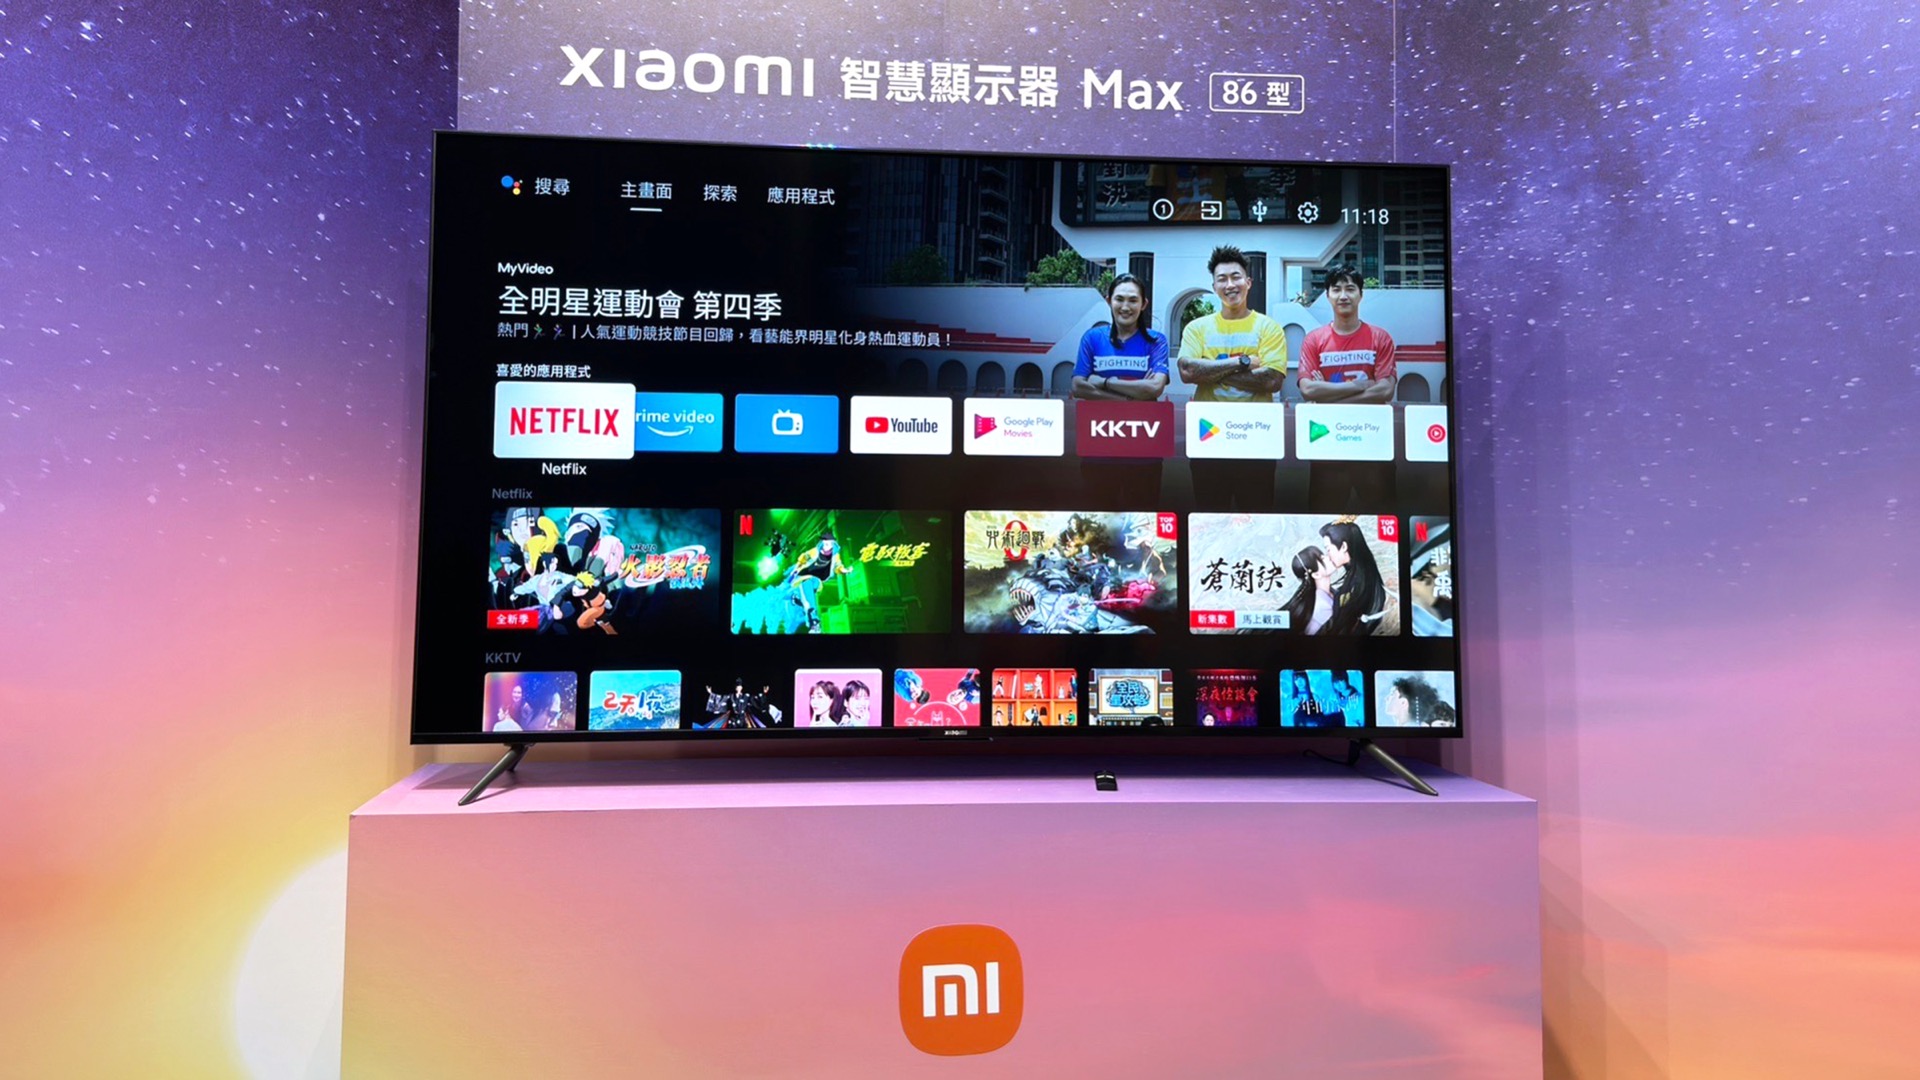 Xiaomi 智慧顯示器 Max 86 型